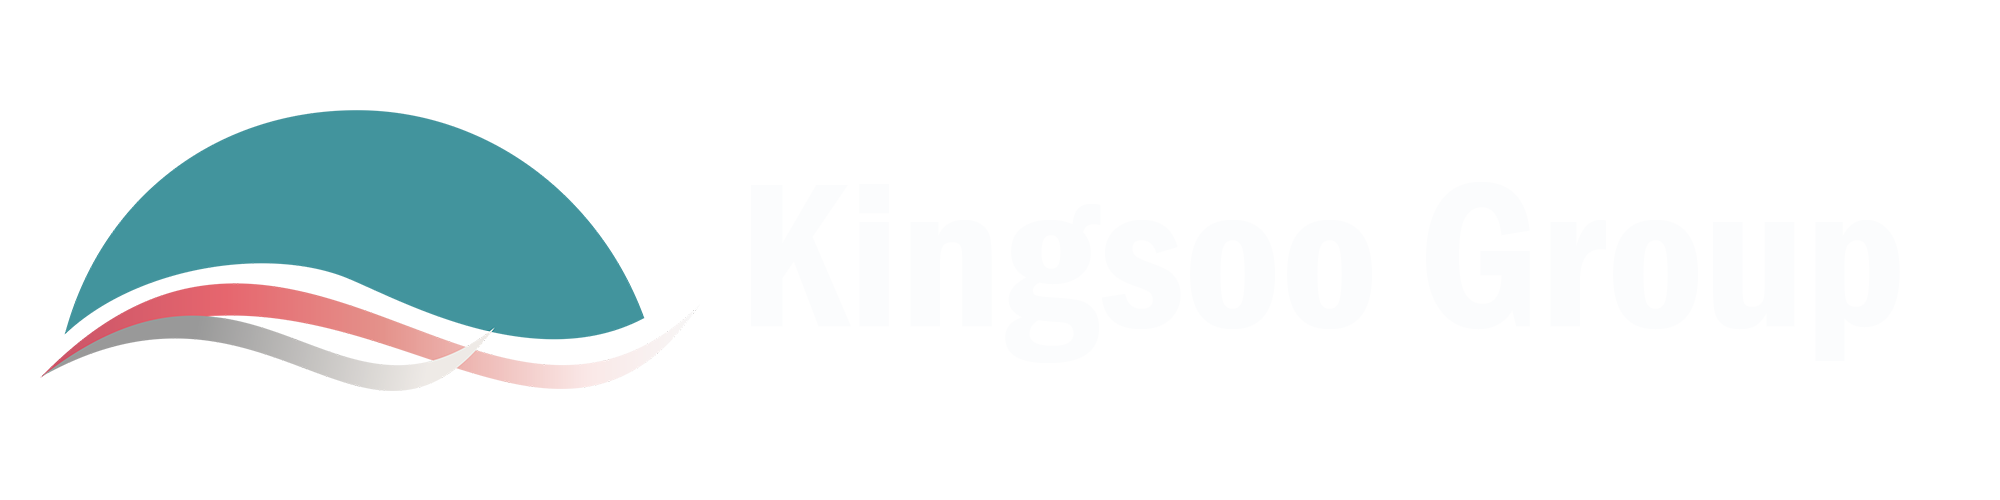 Kingsoo Group